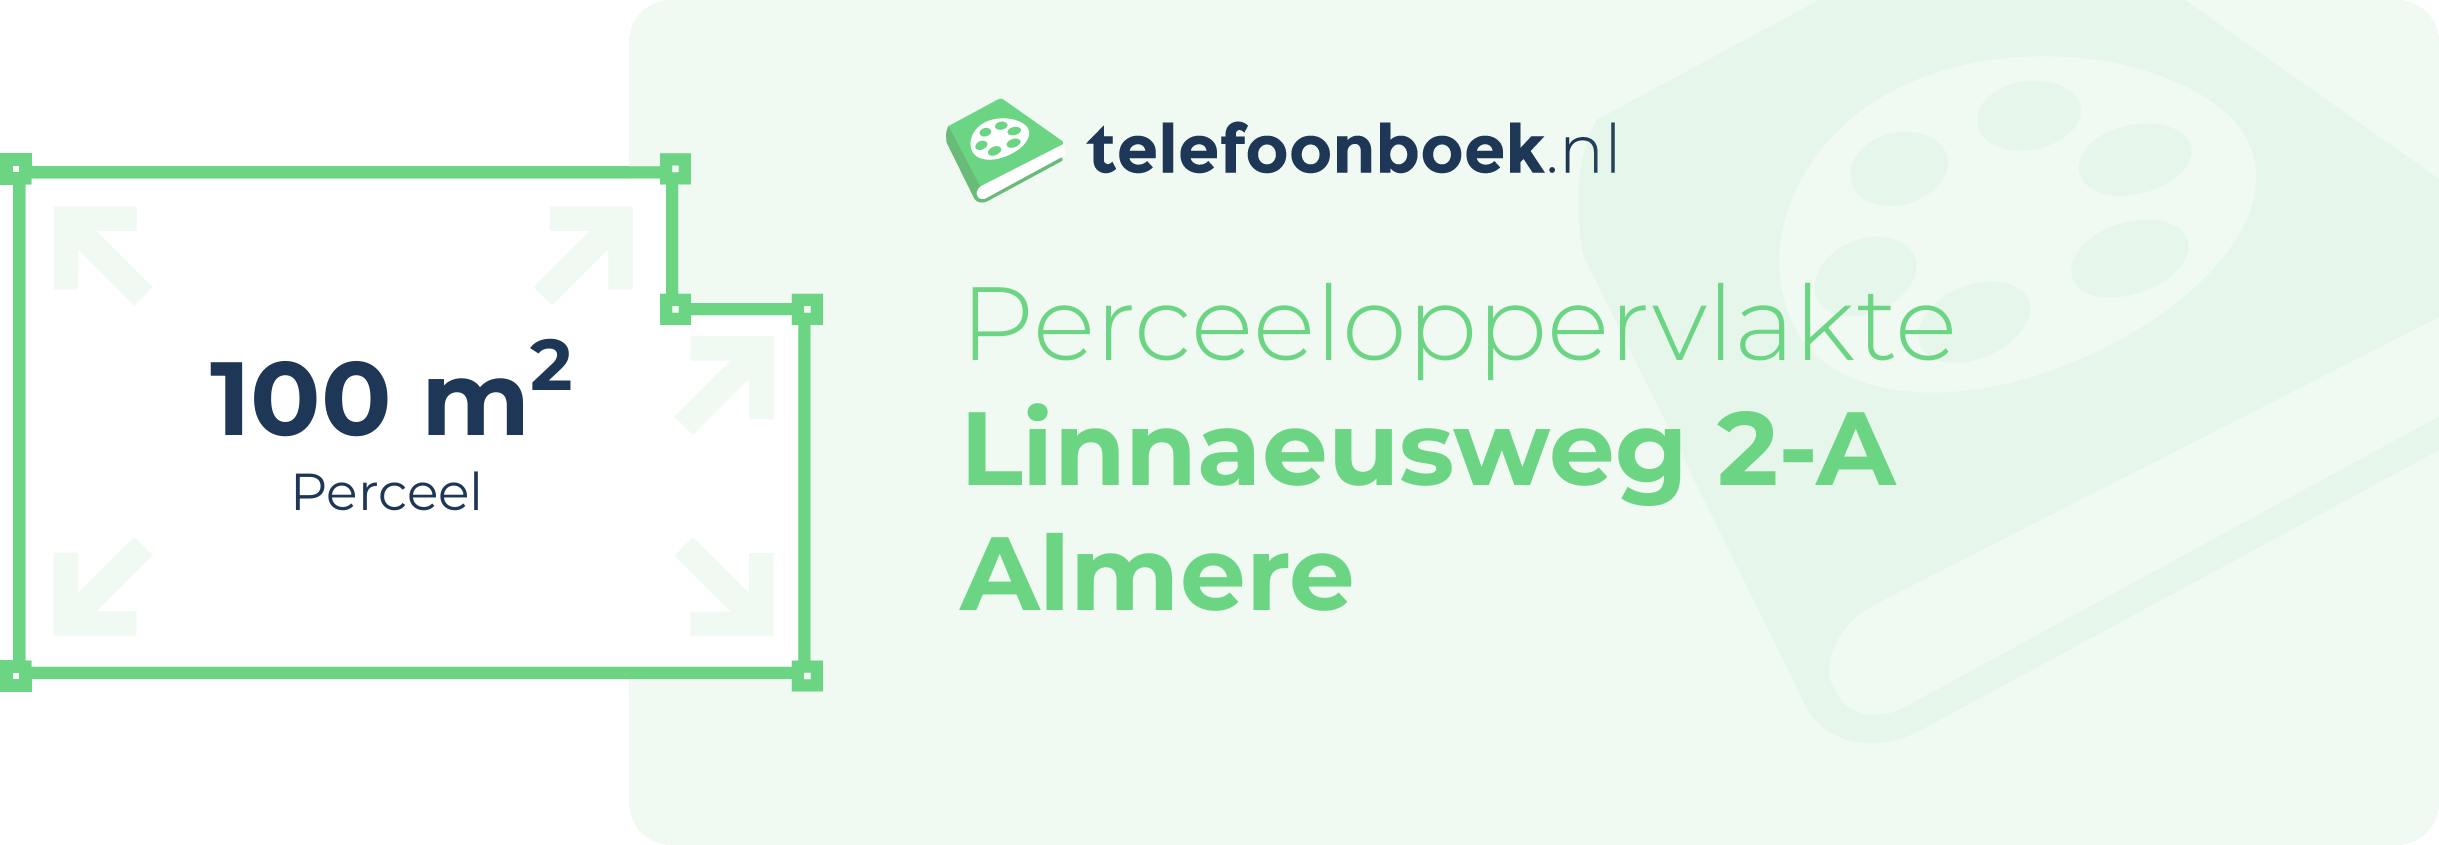 Perceeloppervlakte Linnaeusweg 2-A Almere